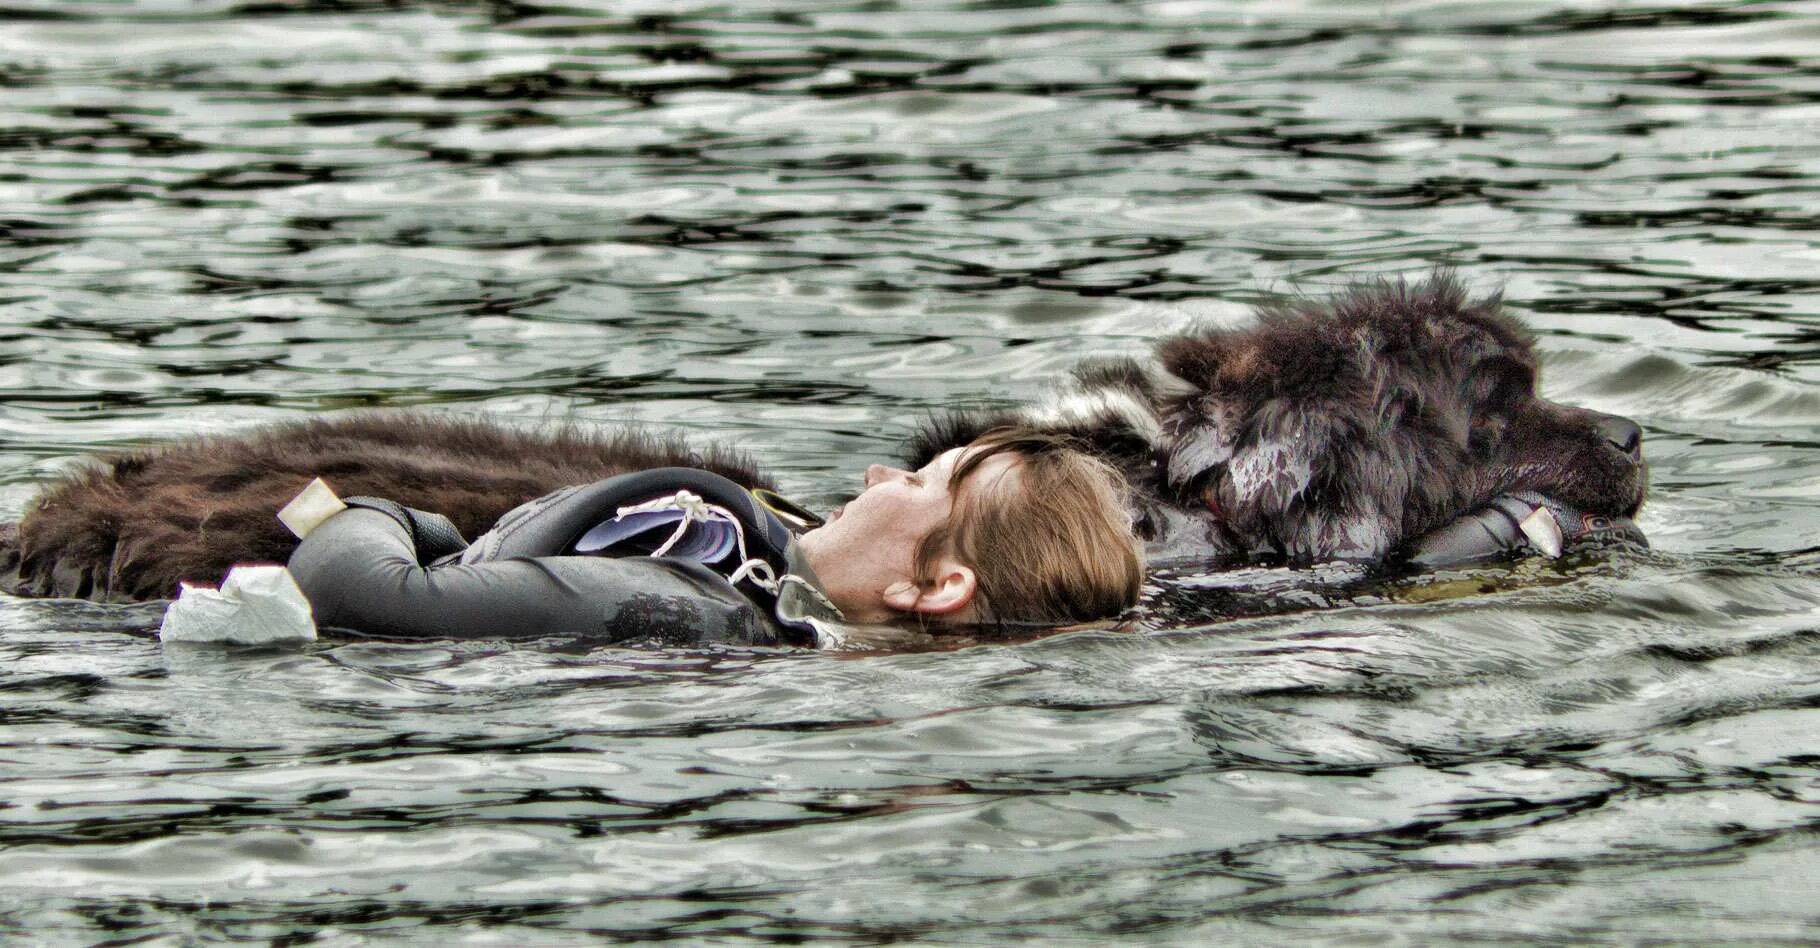 Спасутся люди видео. Водолаз ньюфаундленд спасатель. Собака спасатель порода водолаз. Собака спасатель ньюфаундленд. Ньюфаундленд спасает человека.